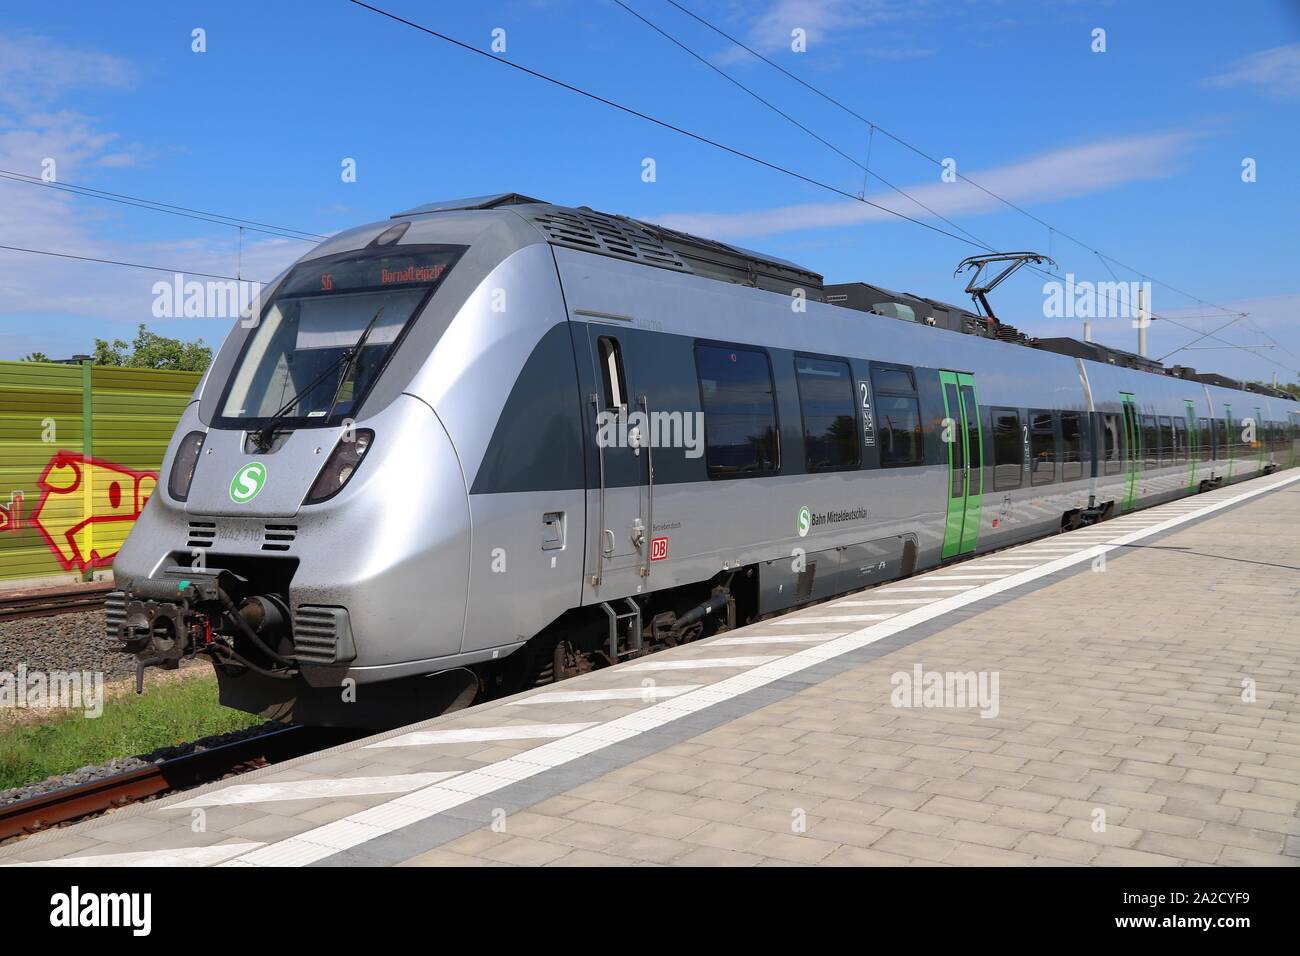 LEIPZIG, ALLEMAGNE - le 9 mai 2018 : les transports en train de S-Bahn Mitteldeutschland. Le train est exploité par DB Région. C'est Bombardier Banque D'Images